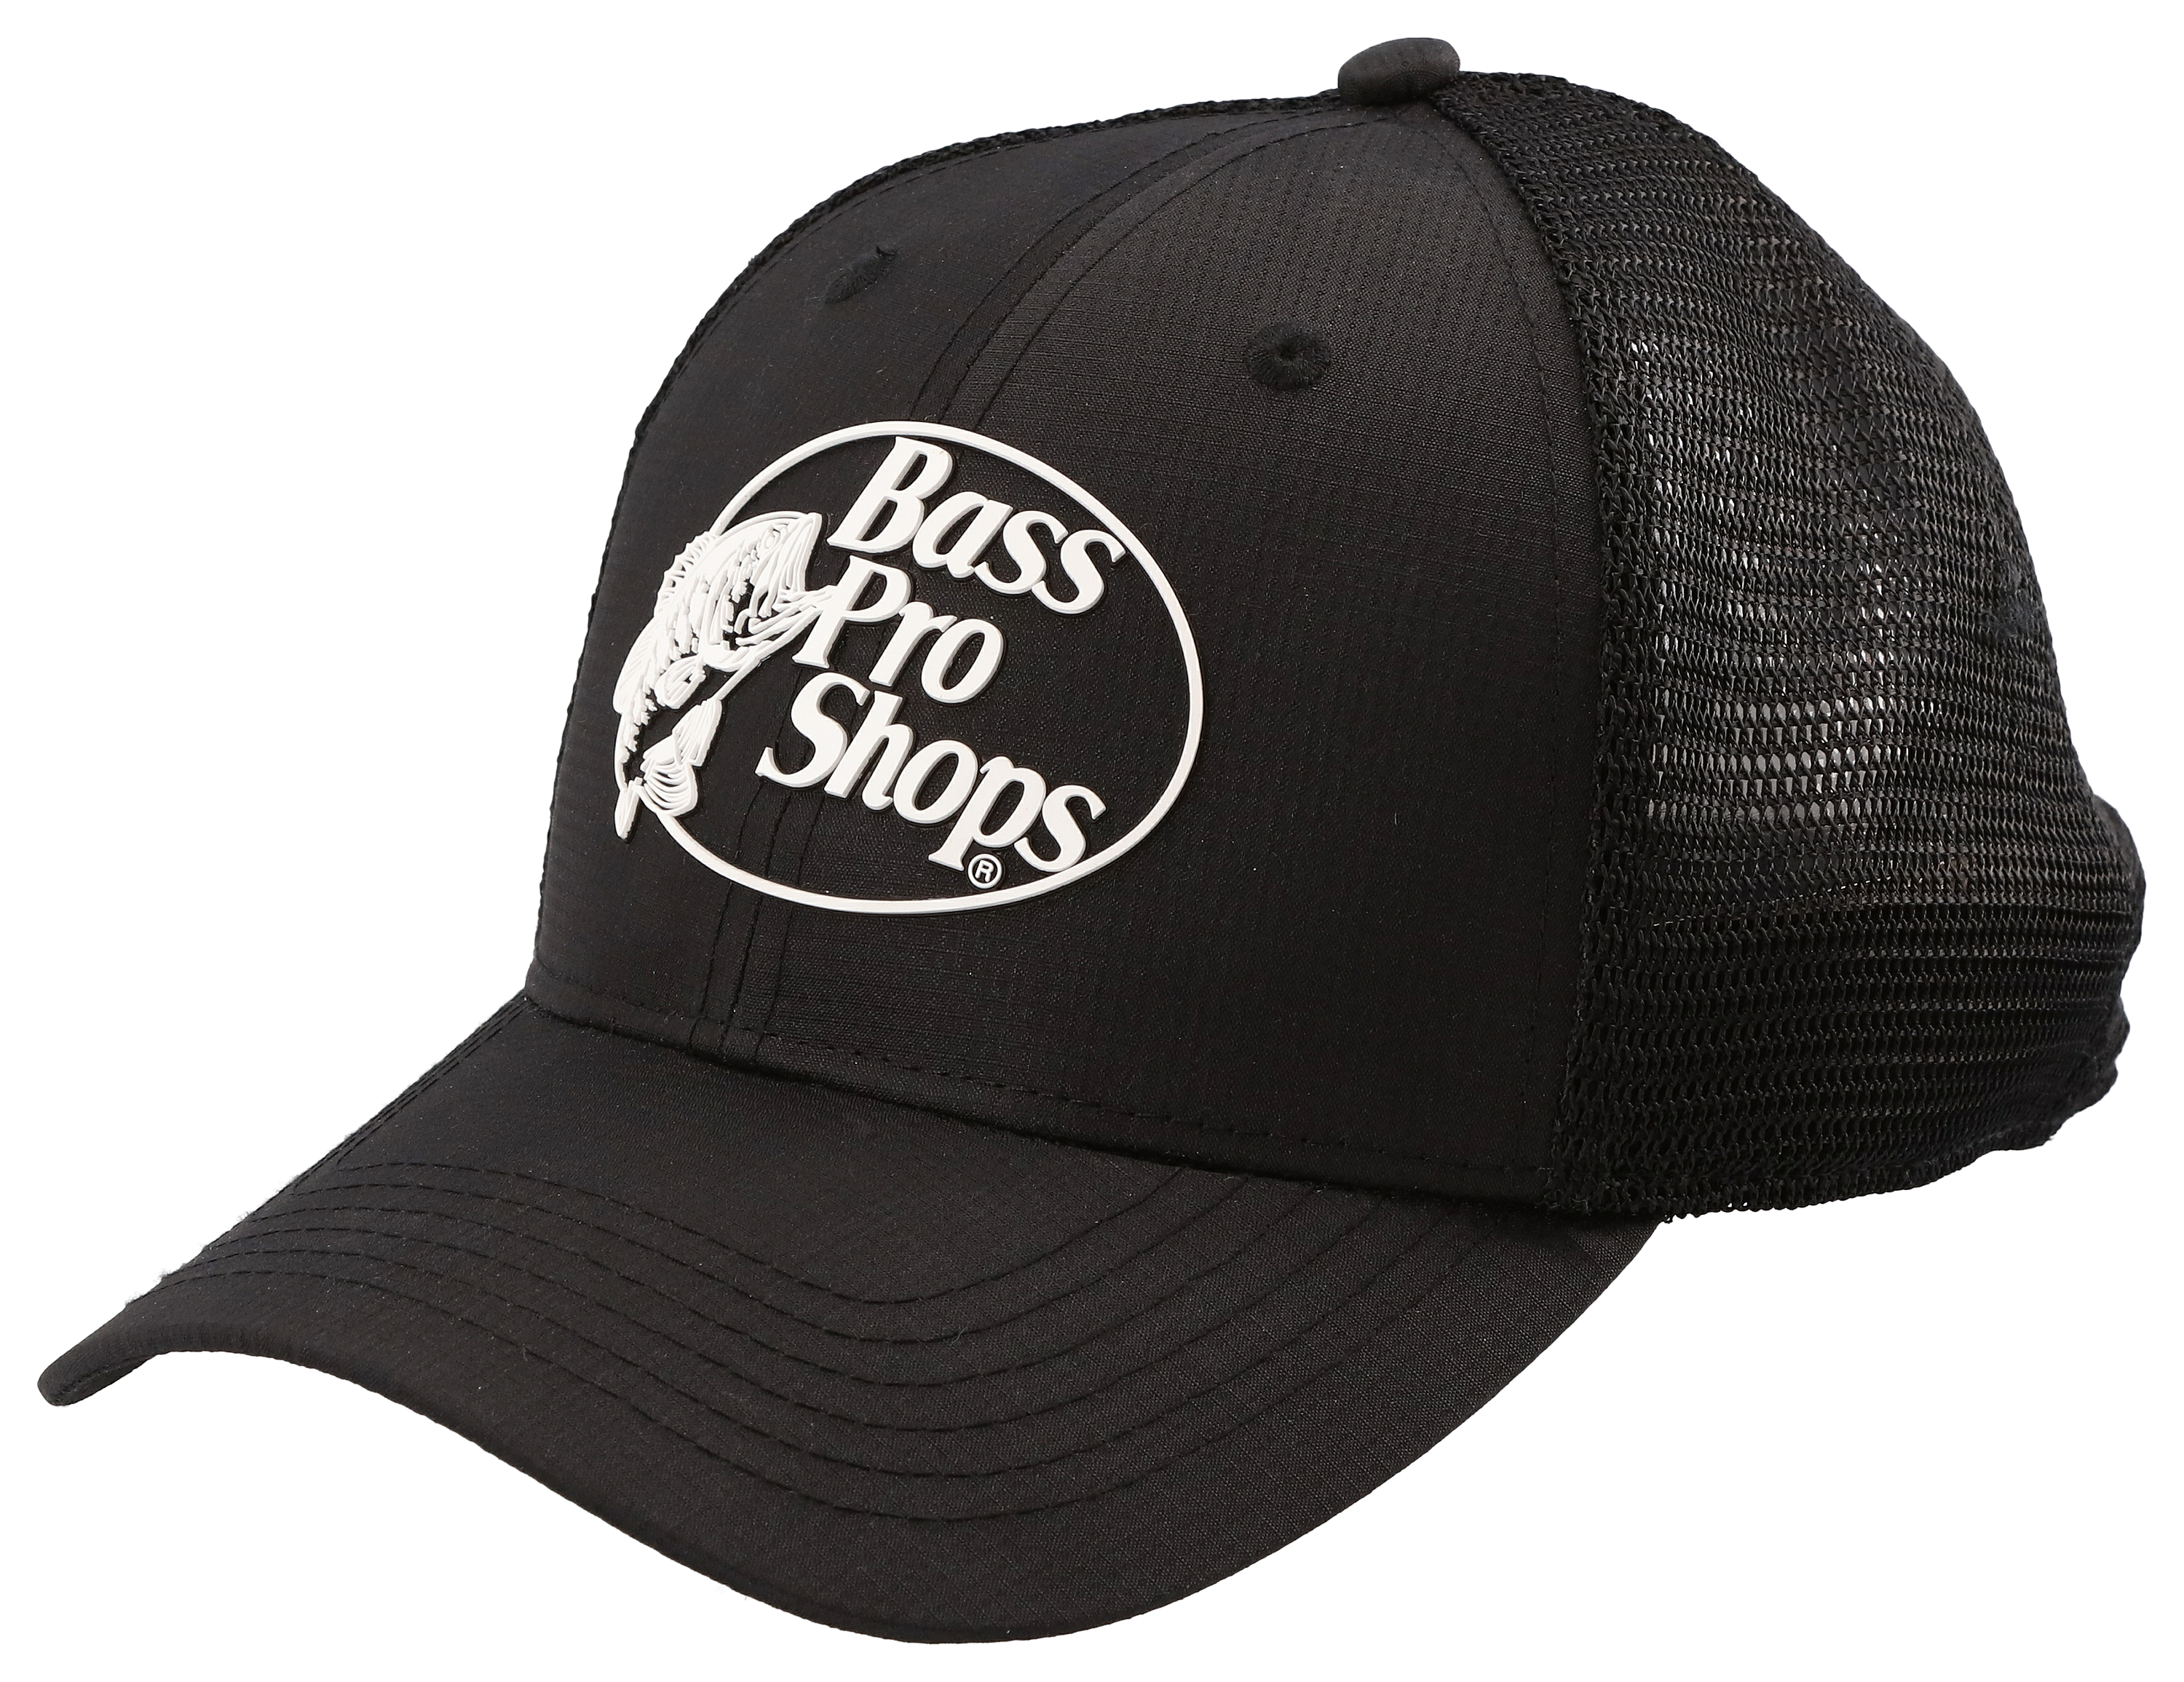 Bass Pro Shops Bass Pro Shop Hat White - $16 (36% Off Retail